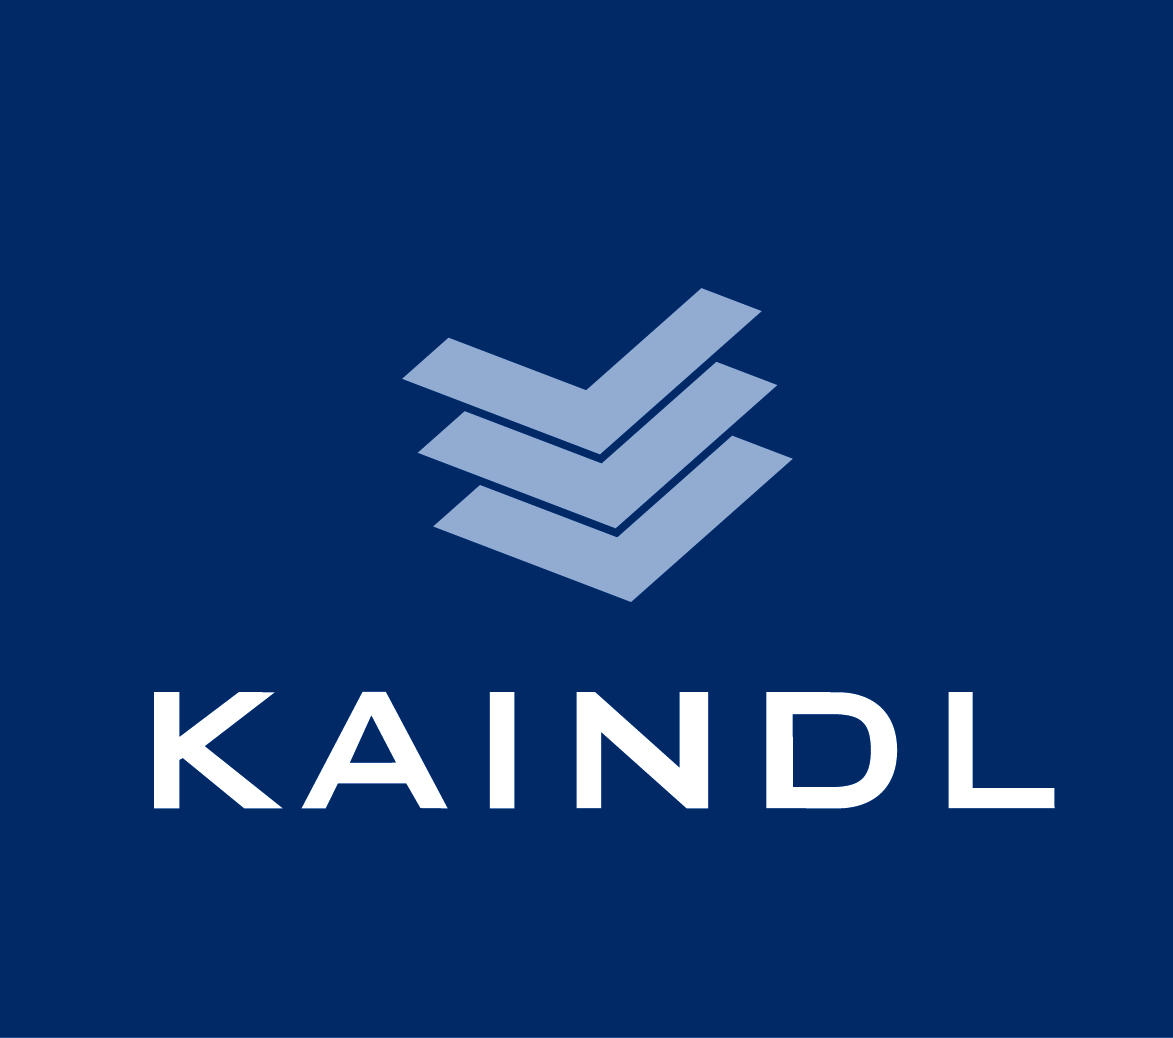 kaindl logo 4c 3